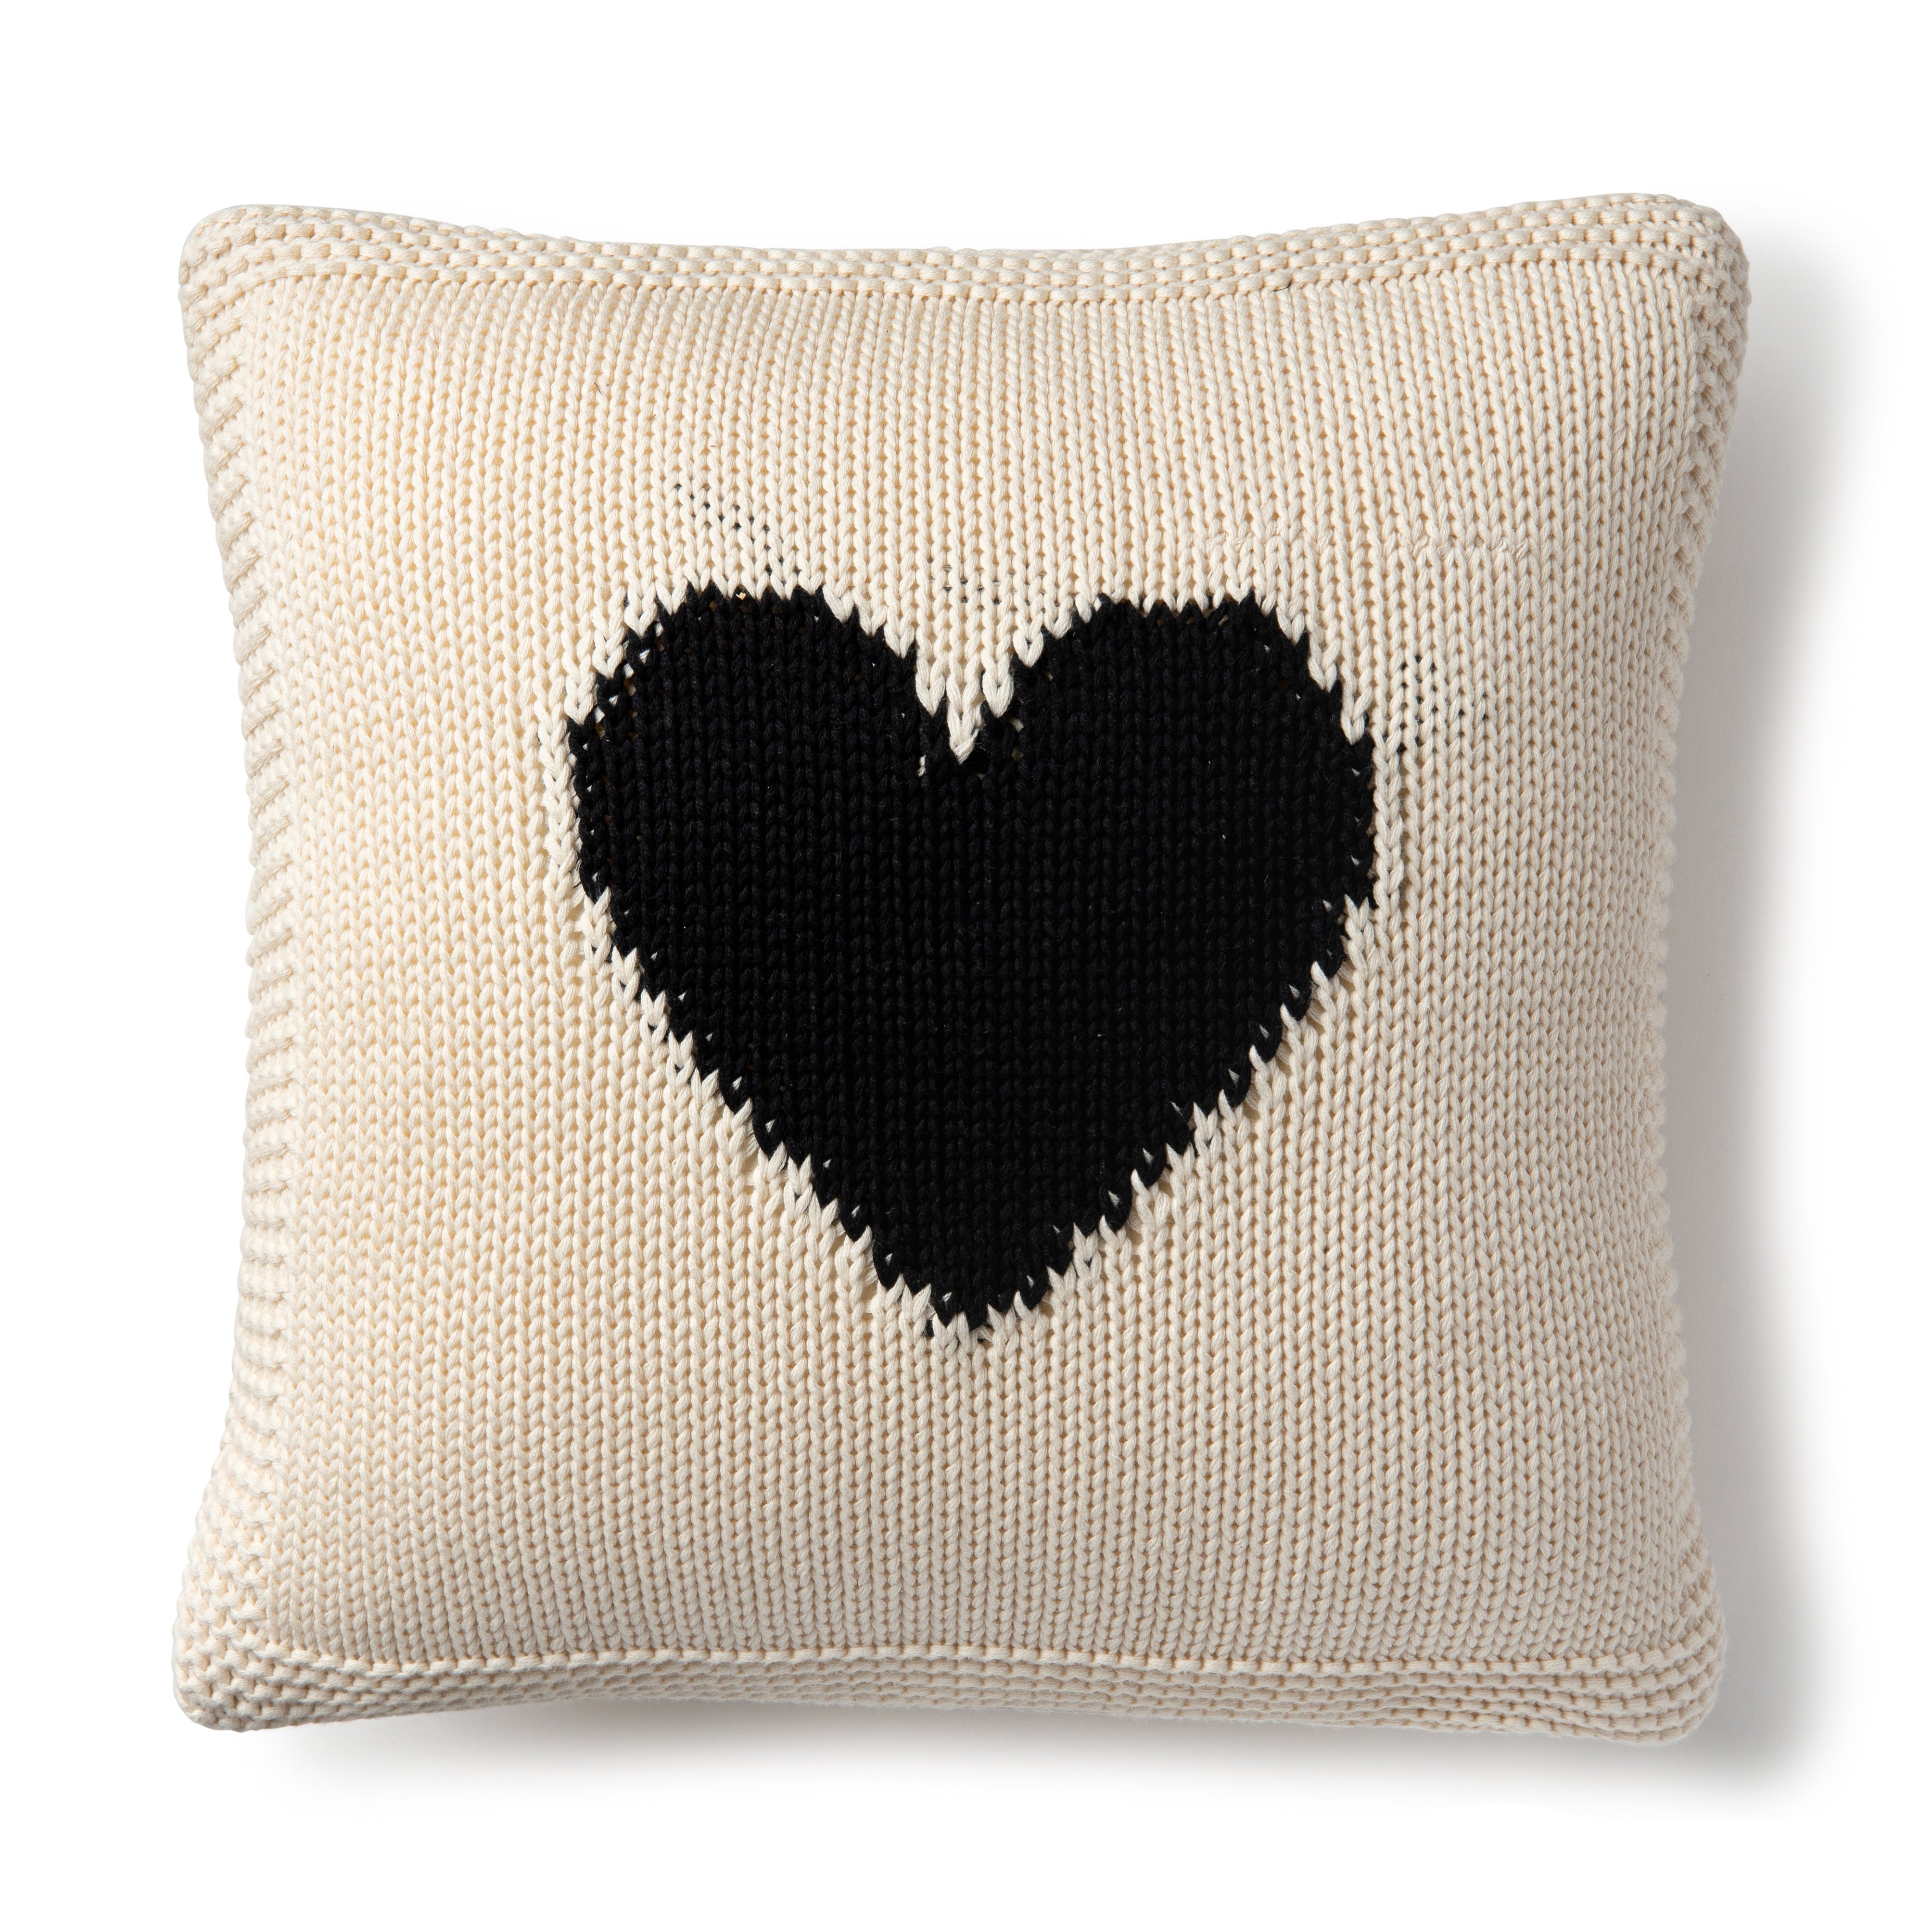 DH Heart Cushion